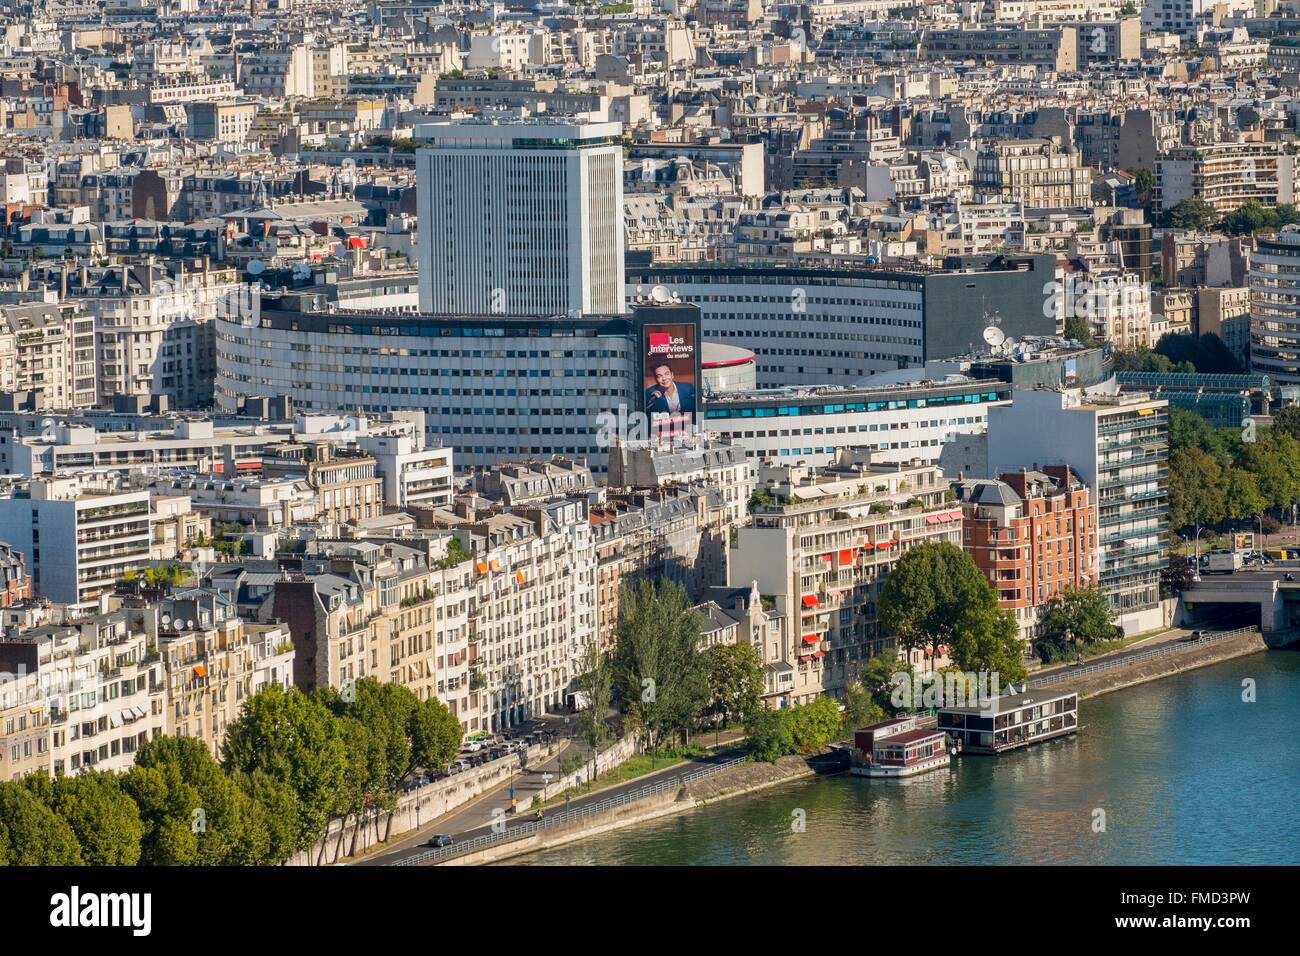 France, Paris, the Maison de la Radio (aerial view) Stock Photo